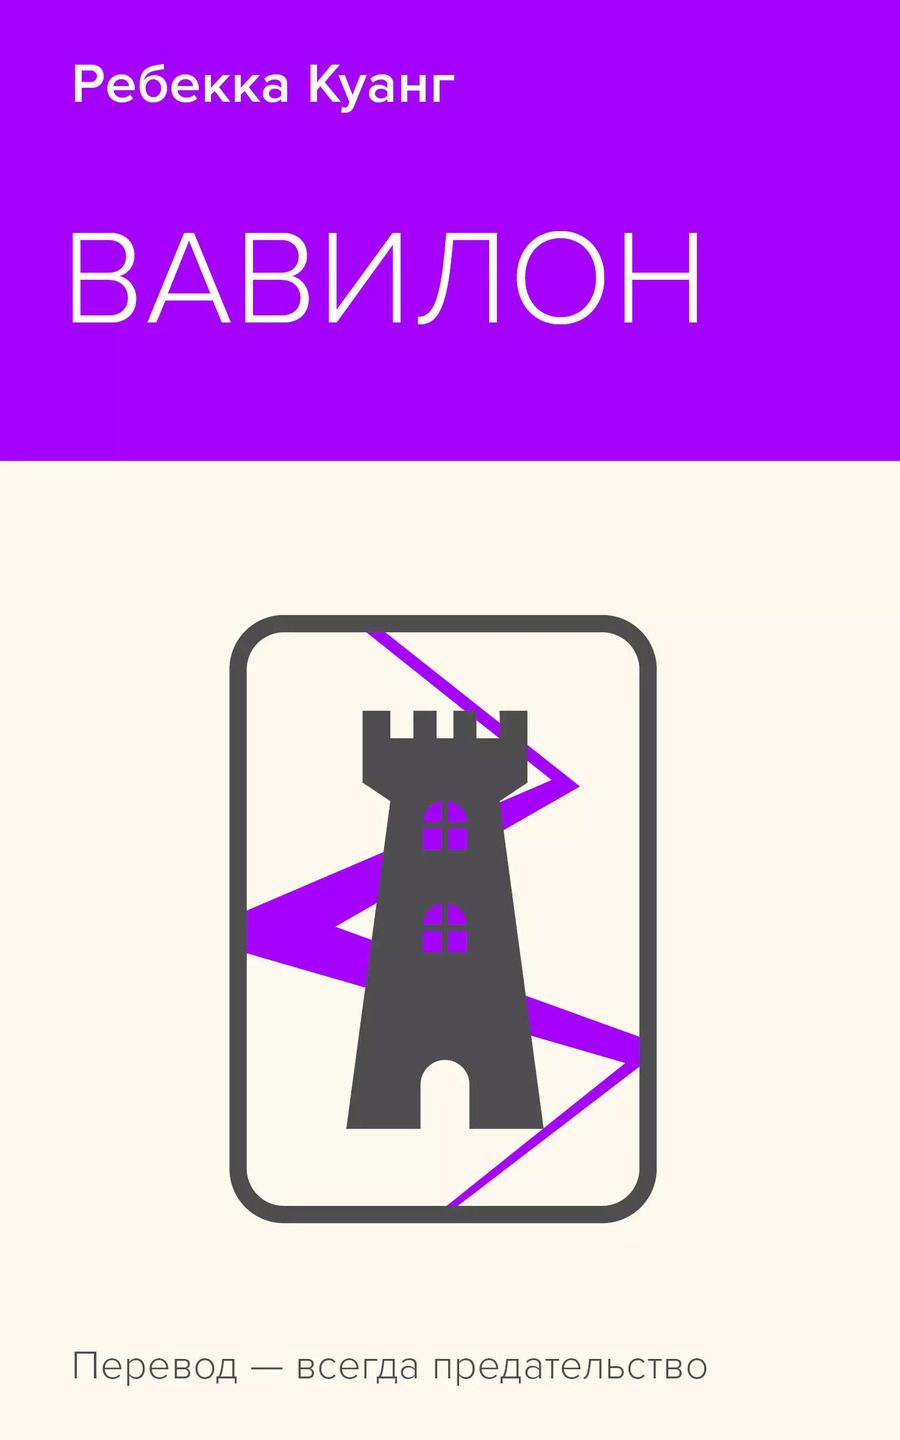 Обложка книги "Ребекка Куанг: Вавилон. Сокрытая история"